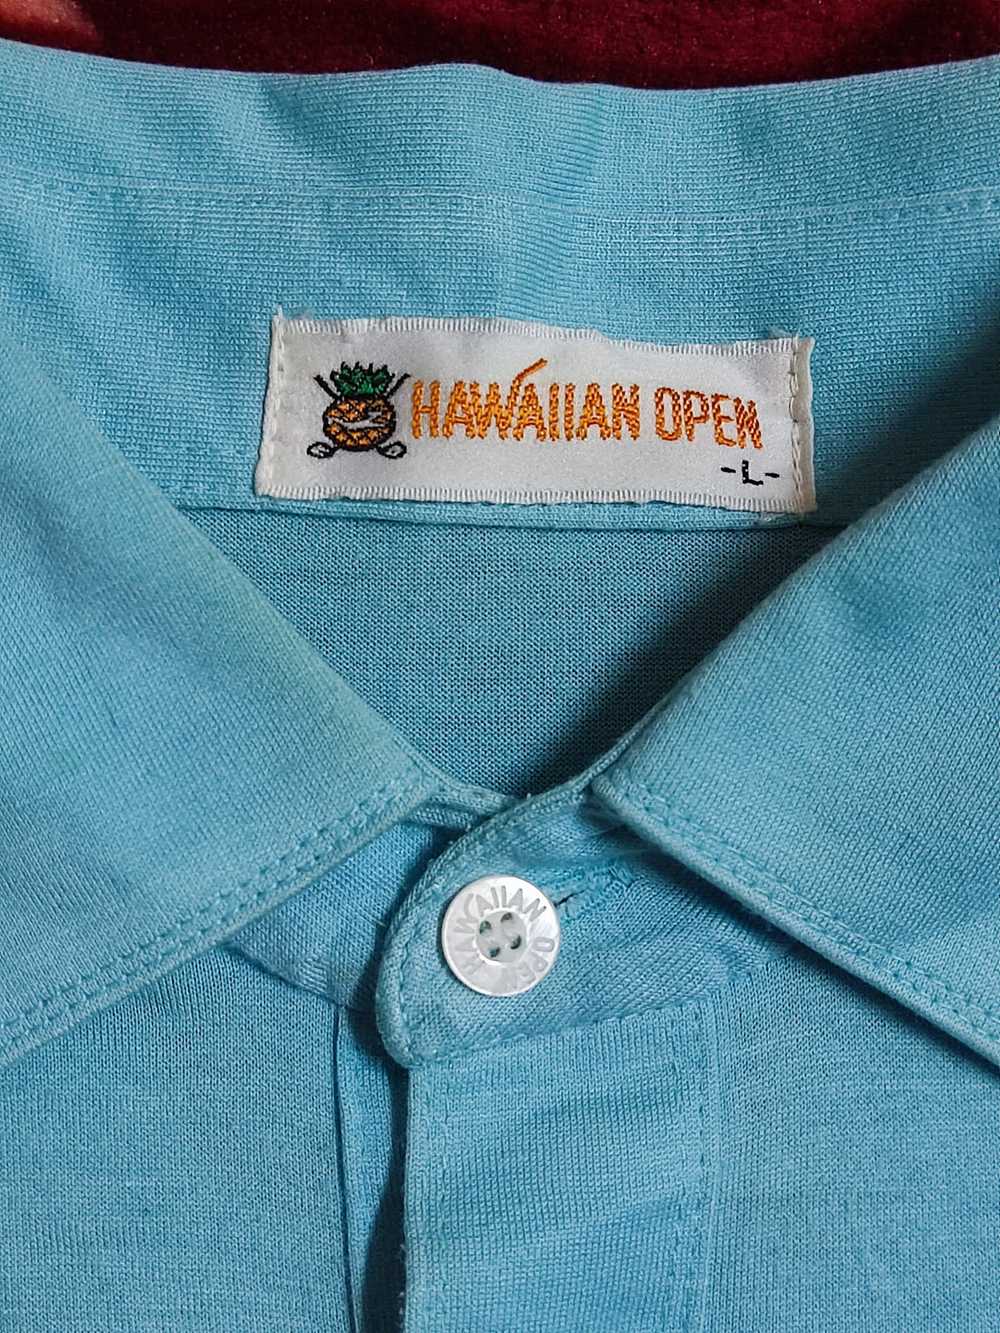 Hawaiian Shirt × Japanese Brand × Vintage Vintage… - image 4